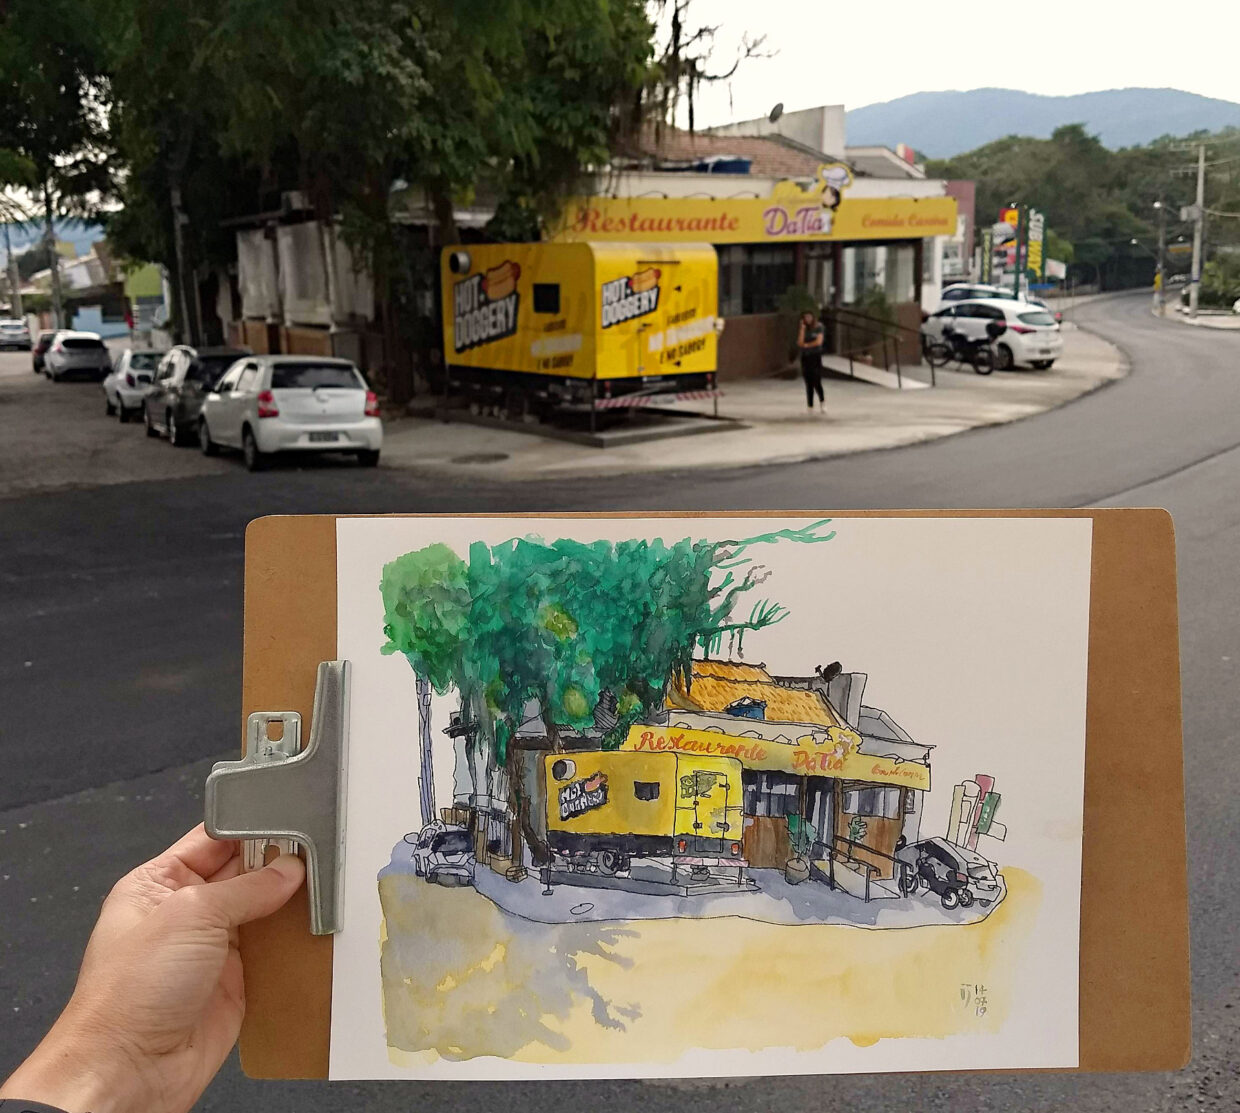 Foto do restaurante Da Tia e do trailer de cachorro quente com o desenho em primeiro plano.